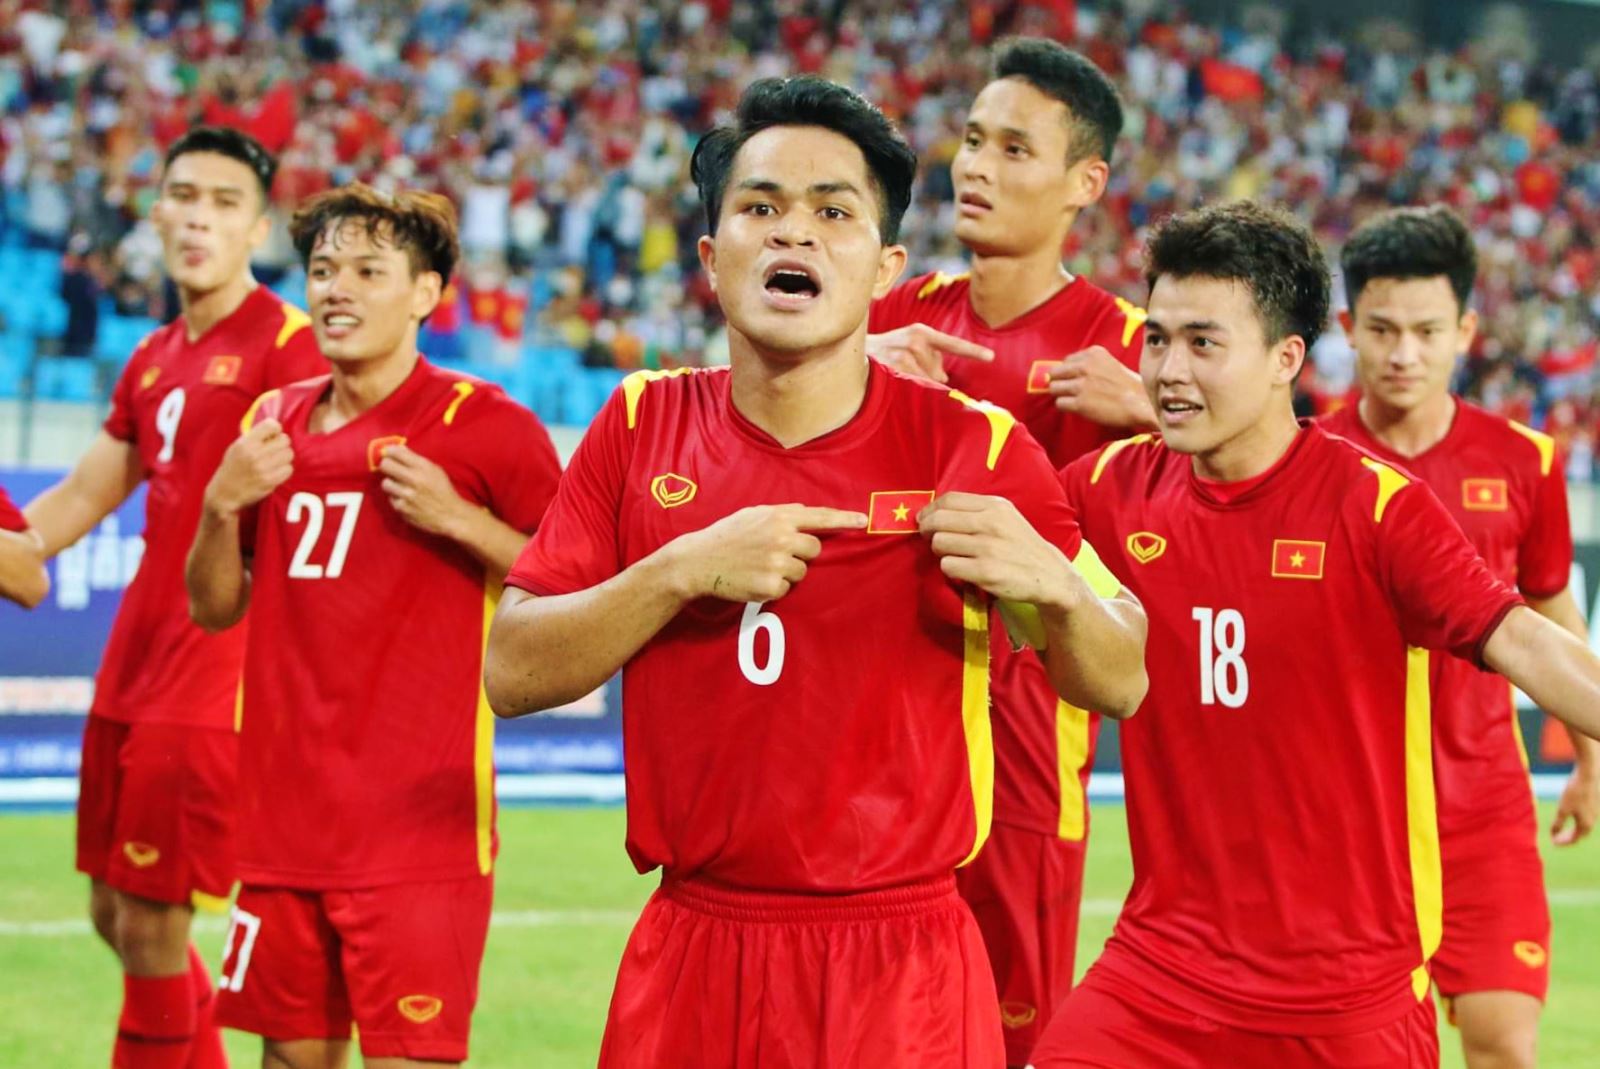 Hình ảnh đội tuyển U23 Olympic Việt Nam đẹp nhất  VFOVN